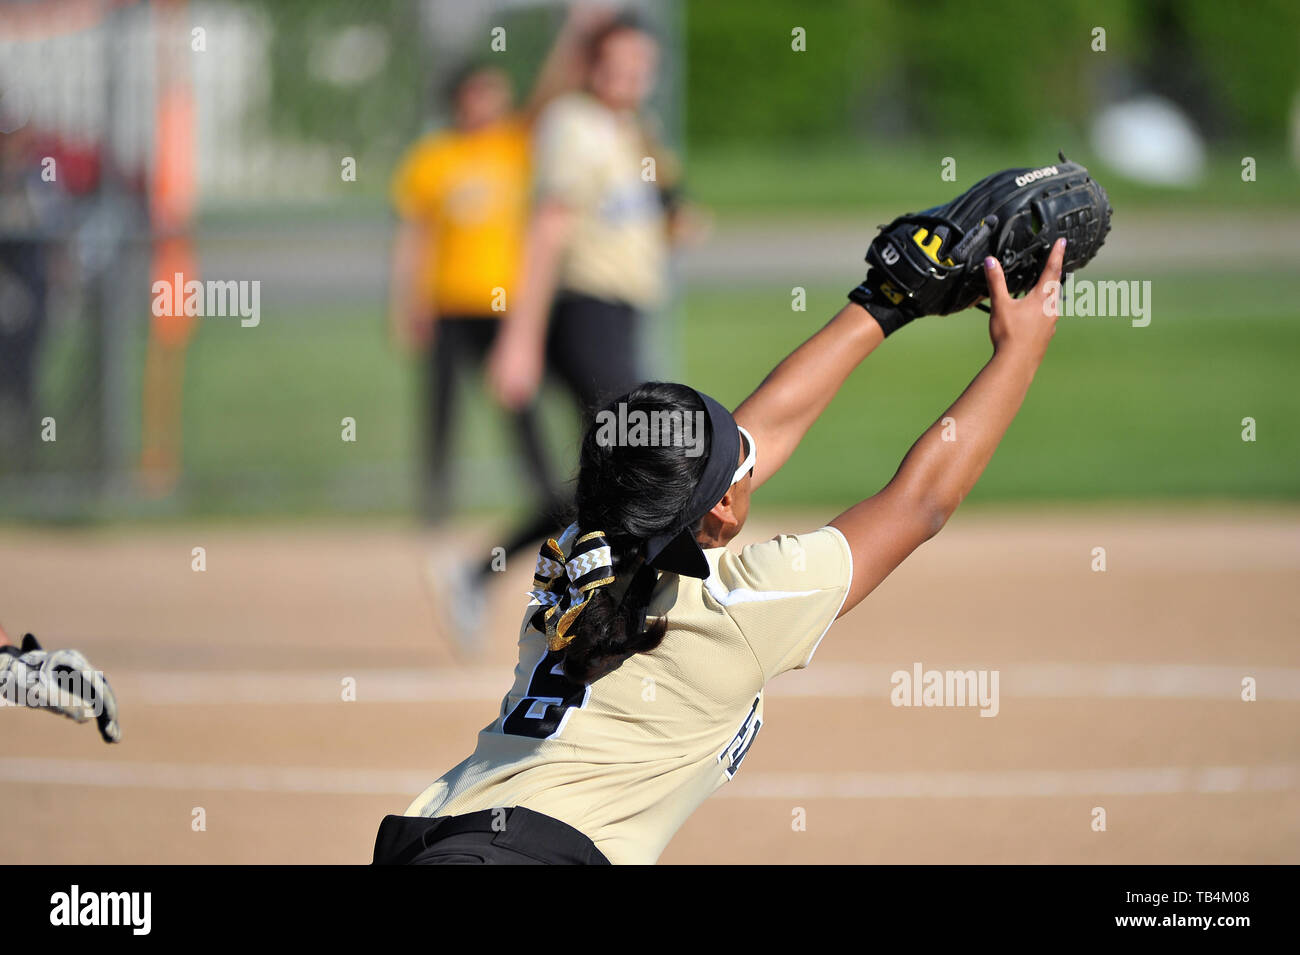 Primo baseman stretching per la cattura di un tiro da un infielder al ritiro la pastella/runner alla prima base. Stati Uniti d'America. Foto Stock